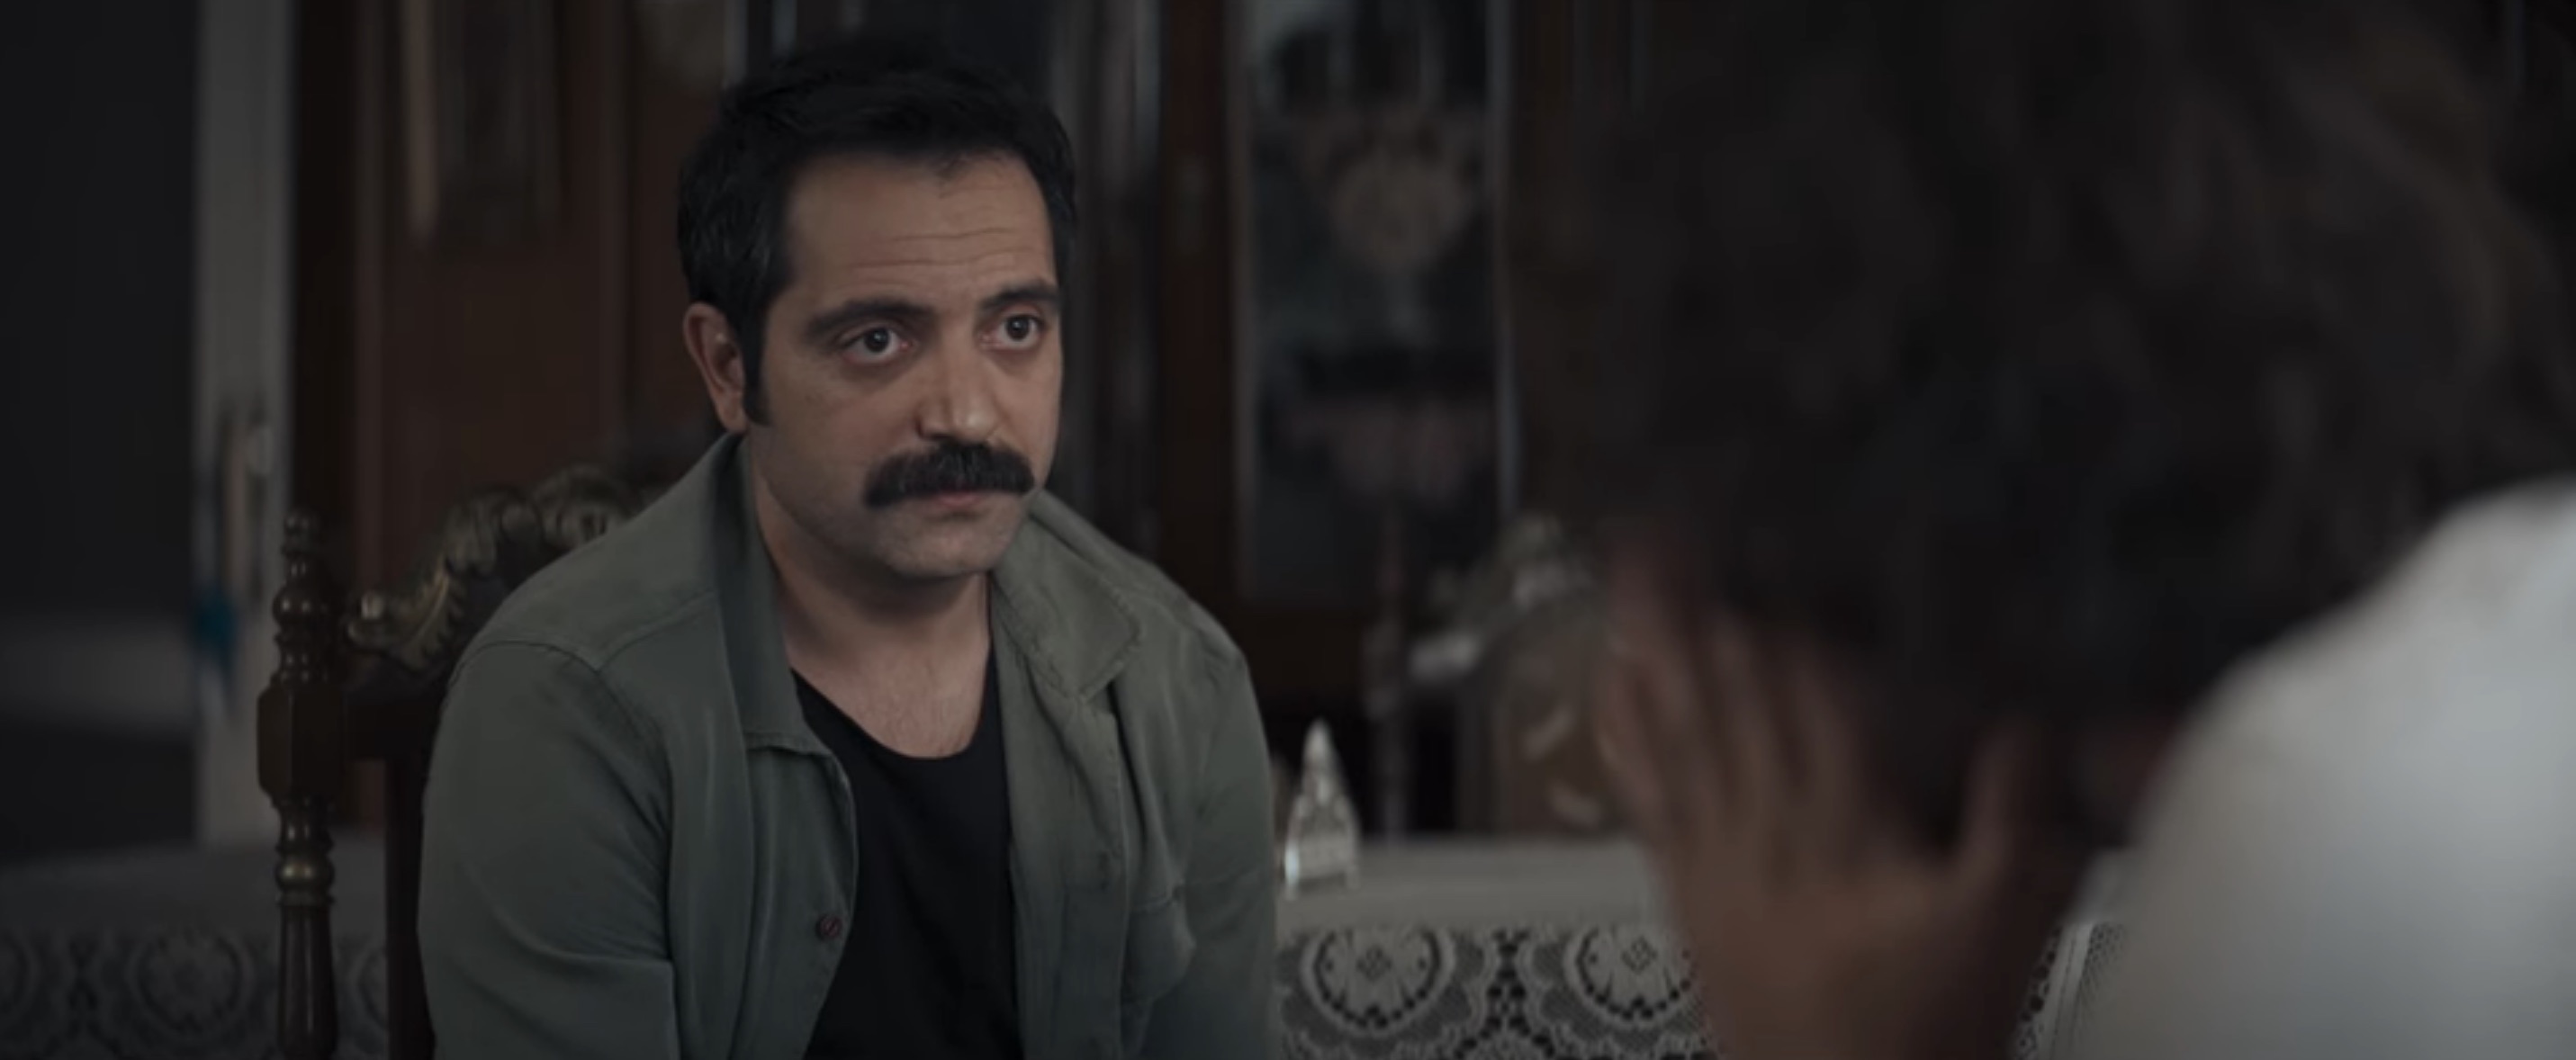 Doom of Love Cast on Netflix - Gürhan Altundasar as Serhat